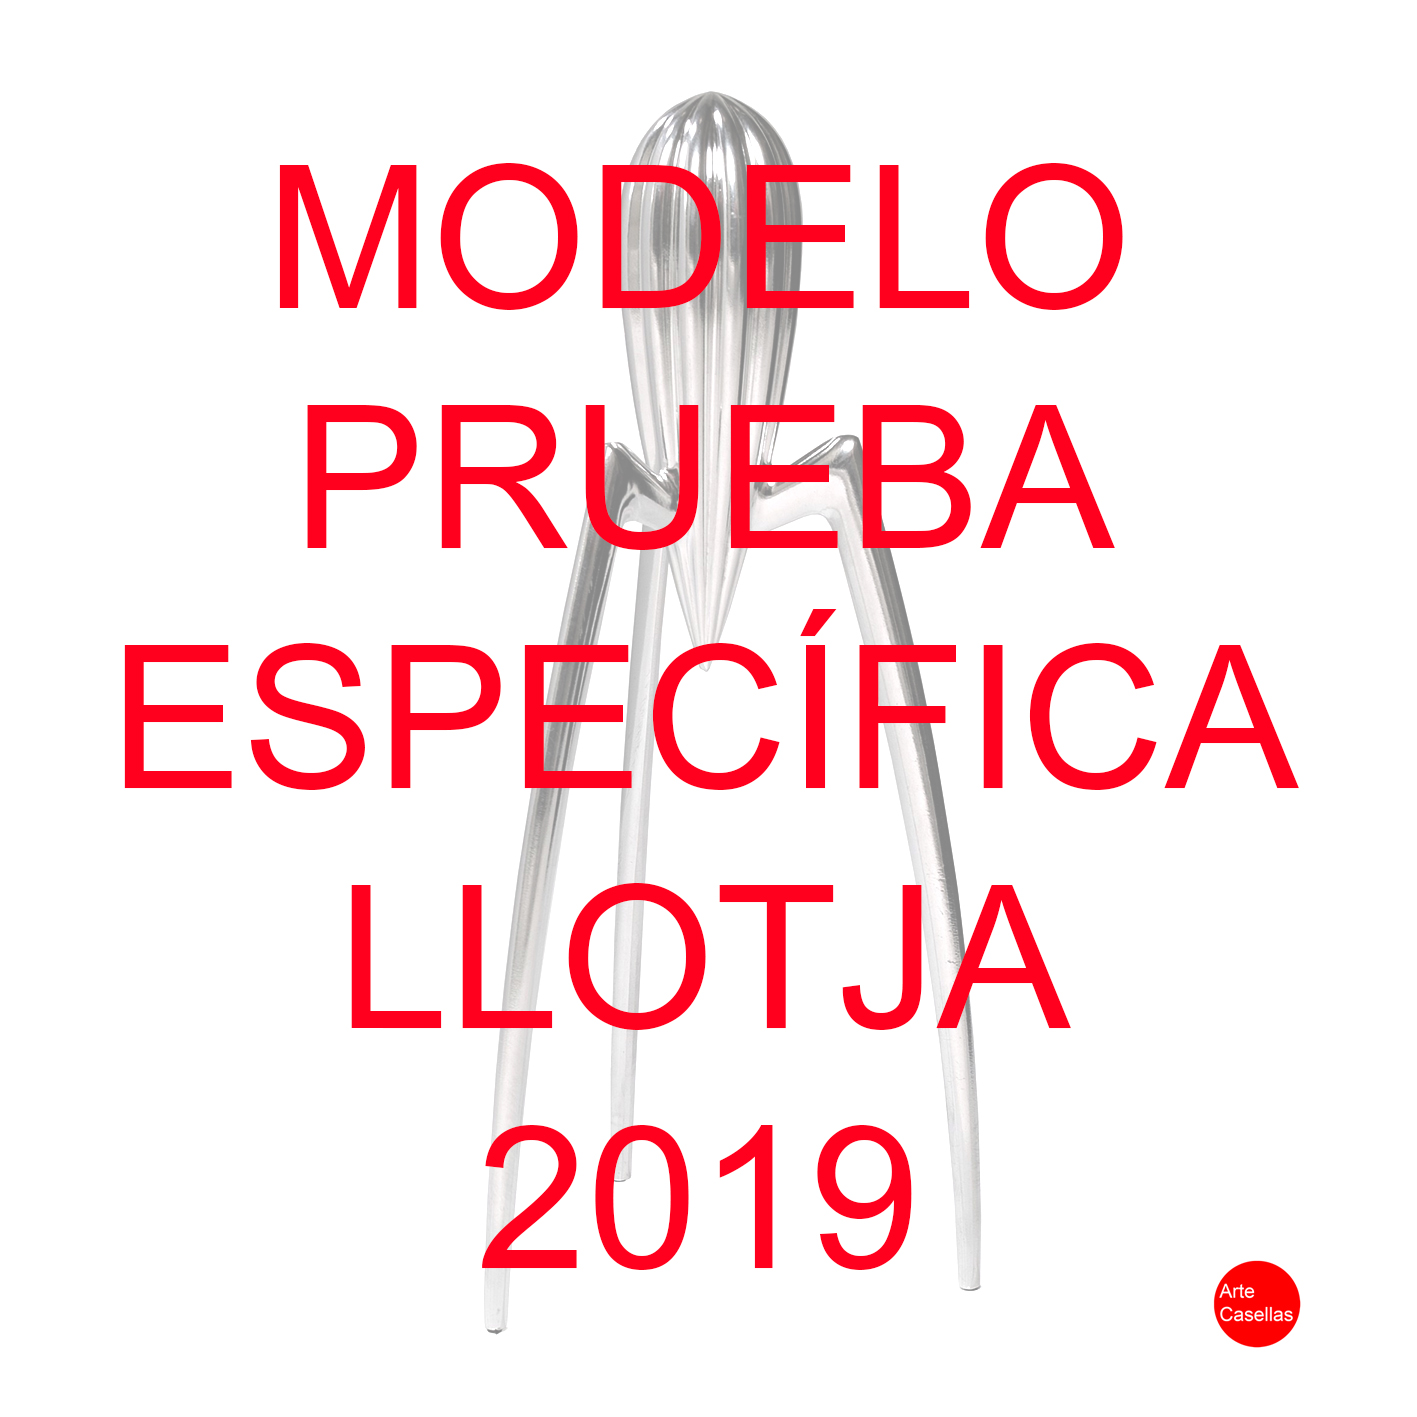 Arte-Casellas.-Modelo-prueba-específica-Llotja-2019.-Clases-de-preparación